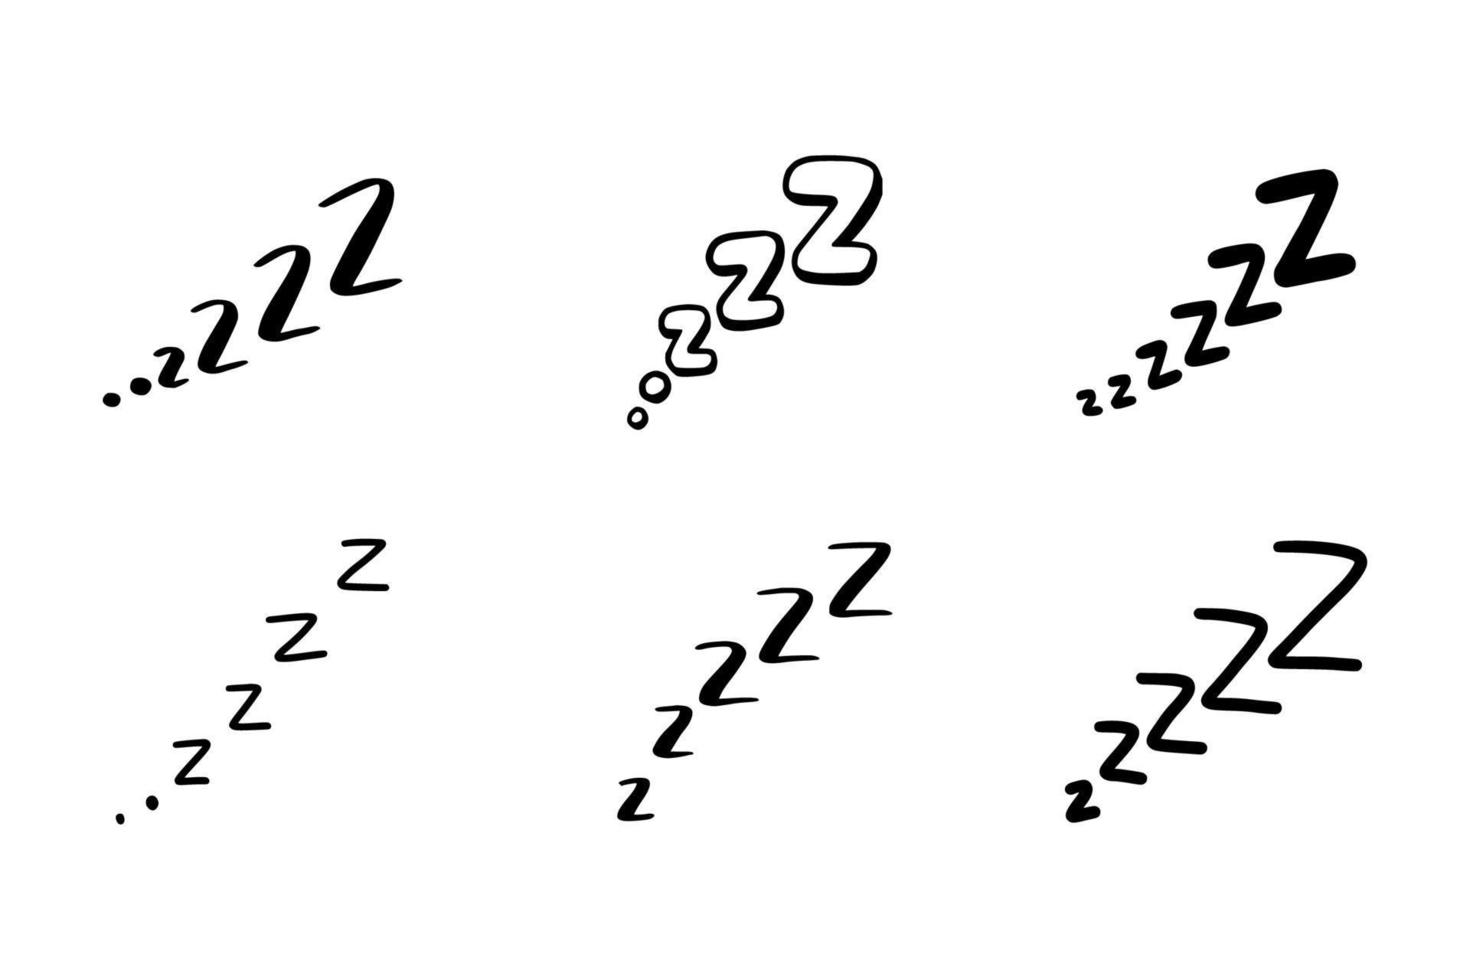 Sleep zzzz doodle symbol set. vector